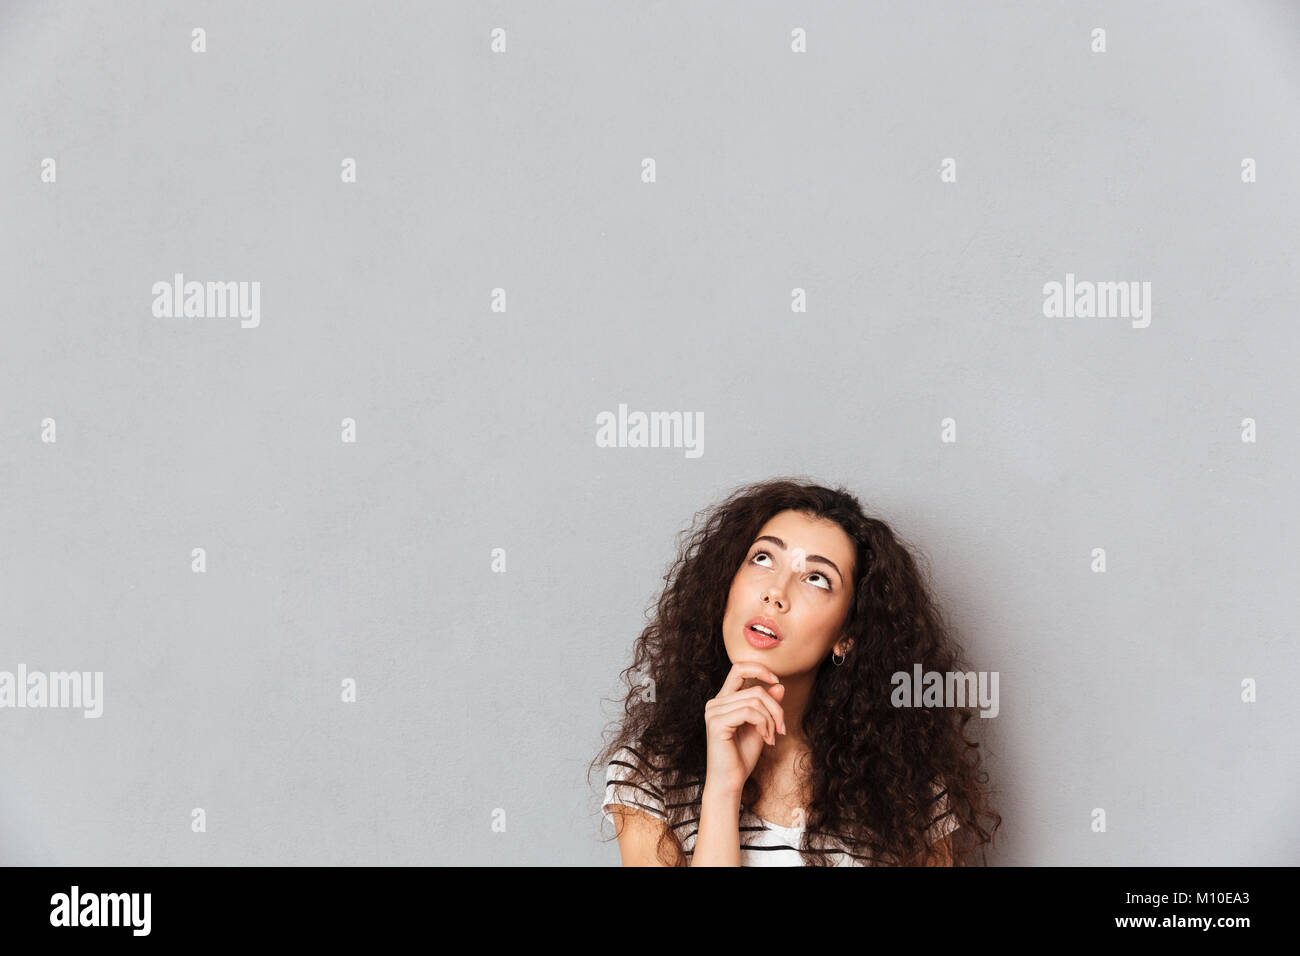 Concentrato di giovane donna con capelli shaggy toccando il suo mento con la faccia verso l'alto, e di pensiero o di sognare su sfondo grigio in studio Foto Stock